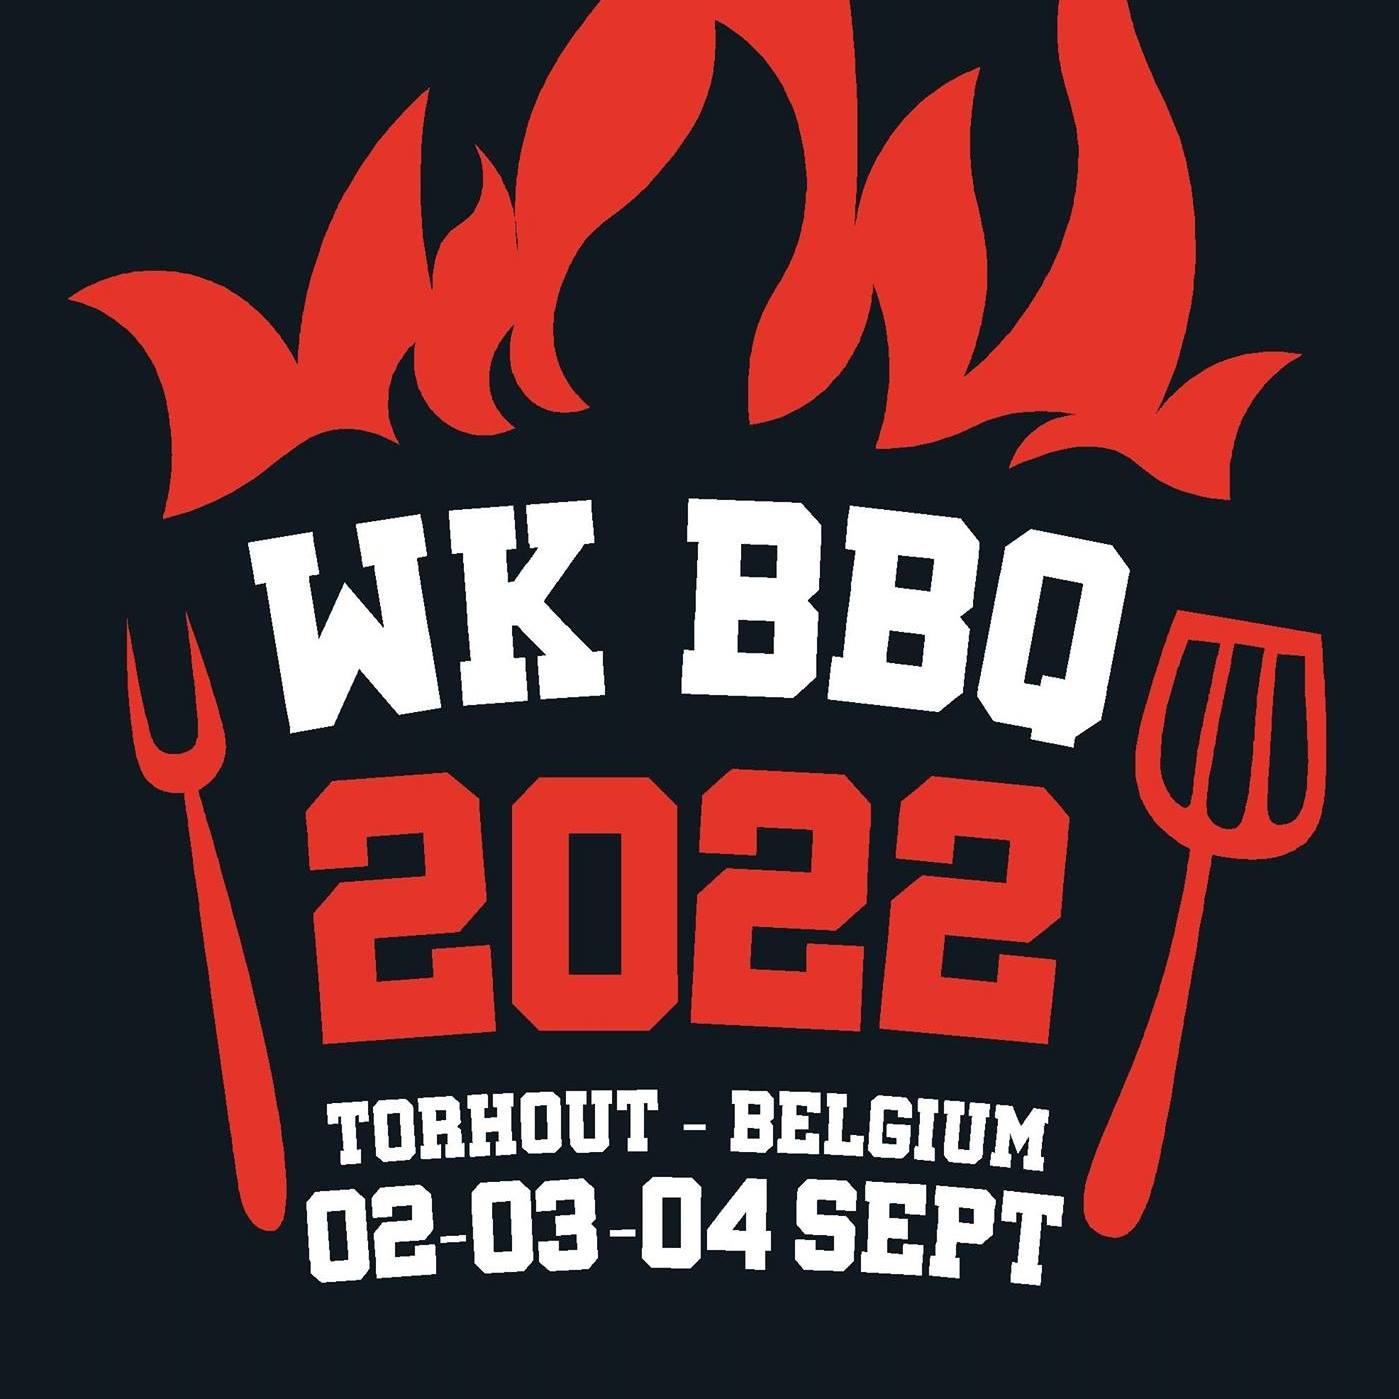 Wk-Bbq-barbeque-Horeca-Belgie